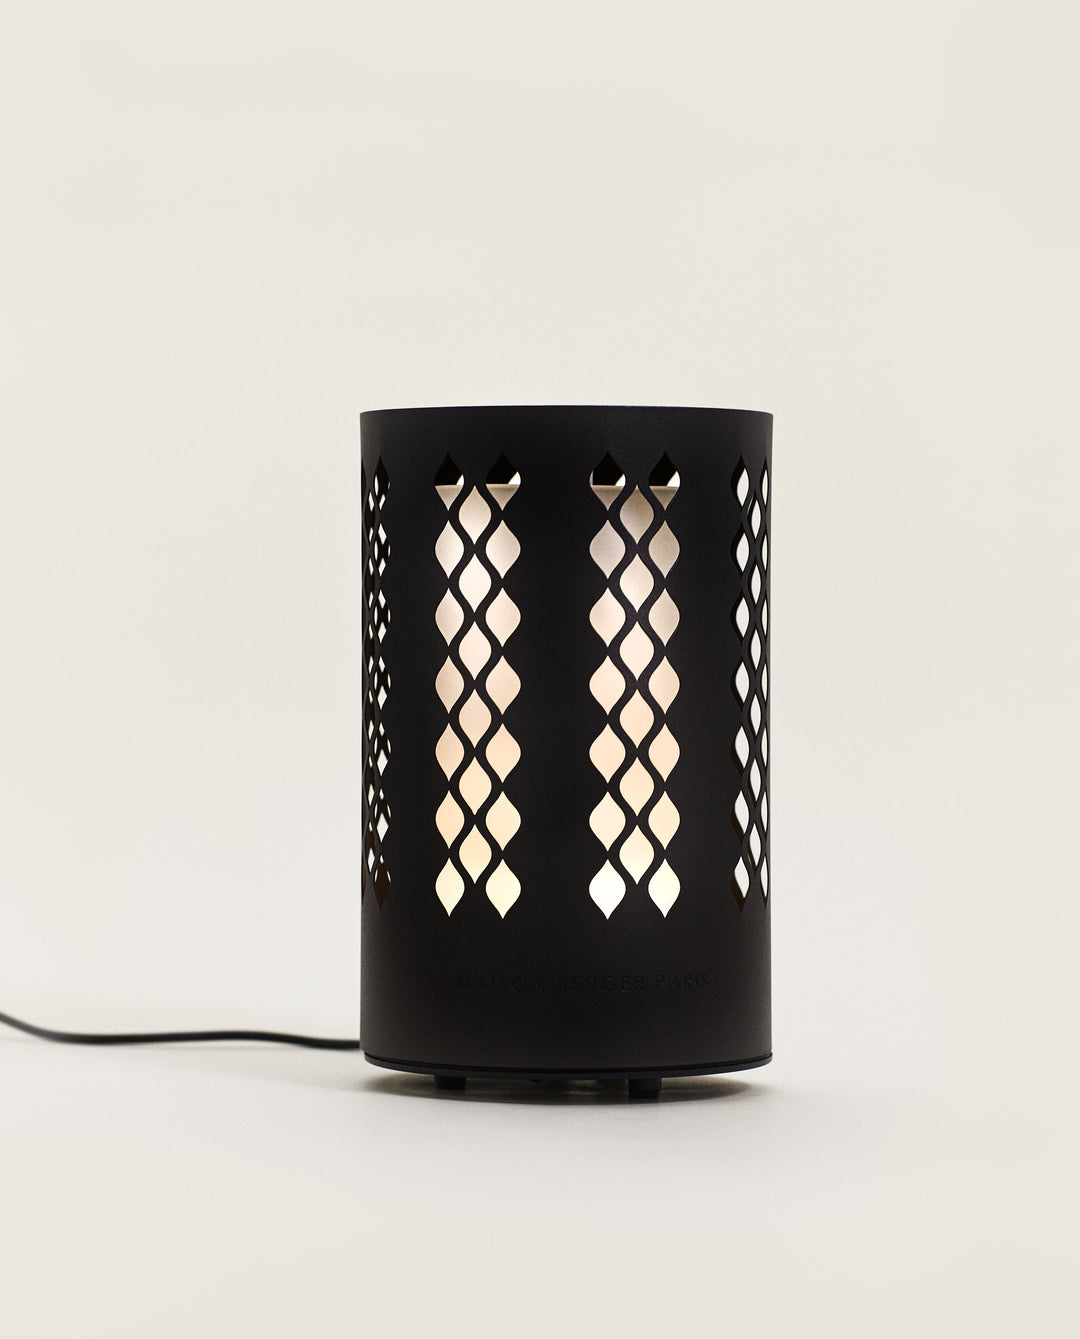 Unsere Elektrodiffuser Lampe Berger - Maison Berger offizieller Onlineshop DE - AT